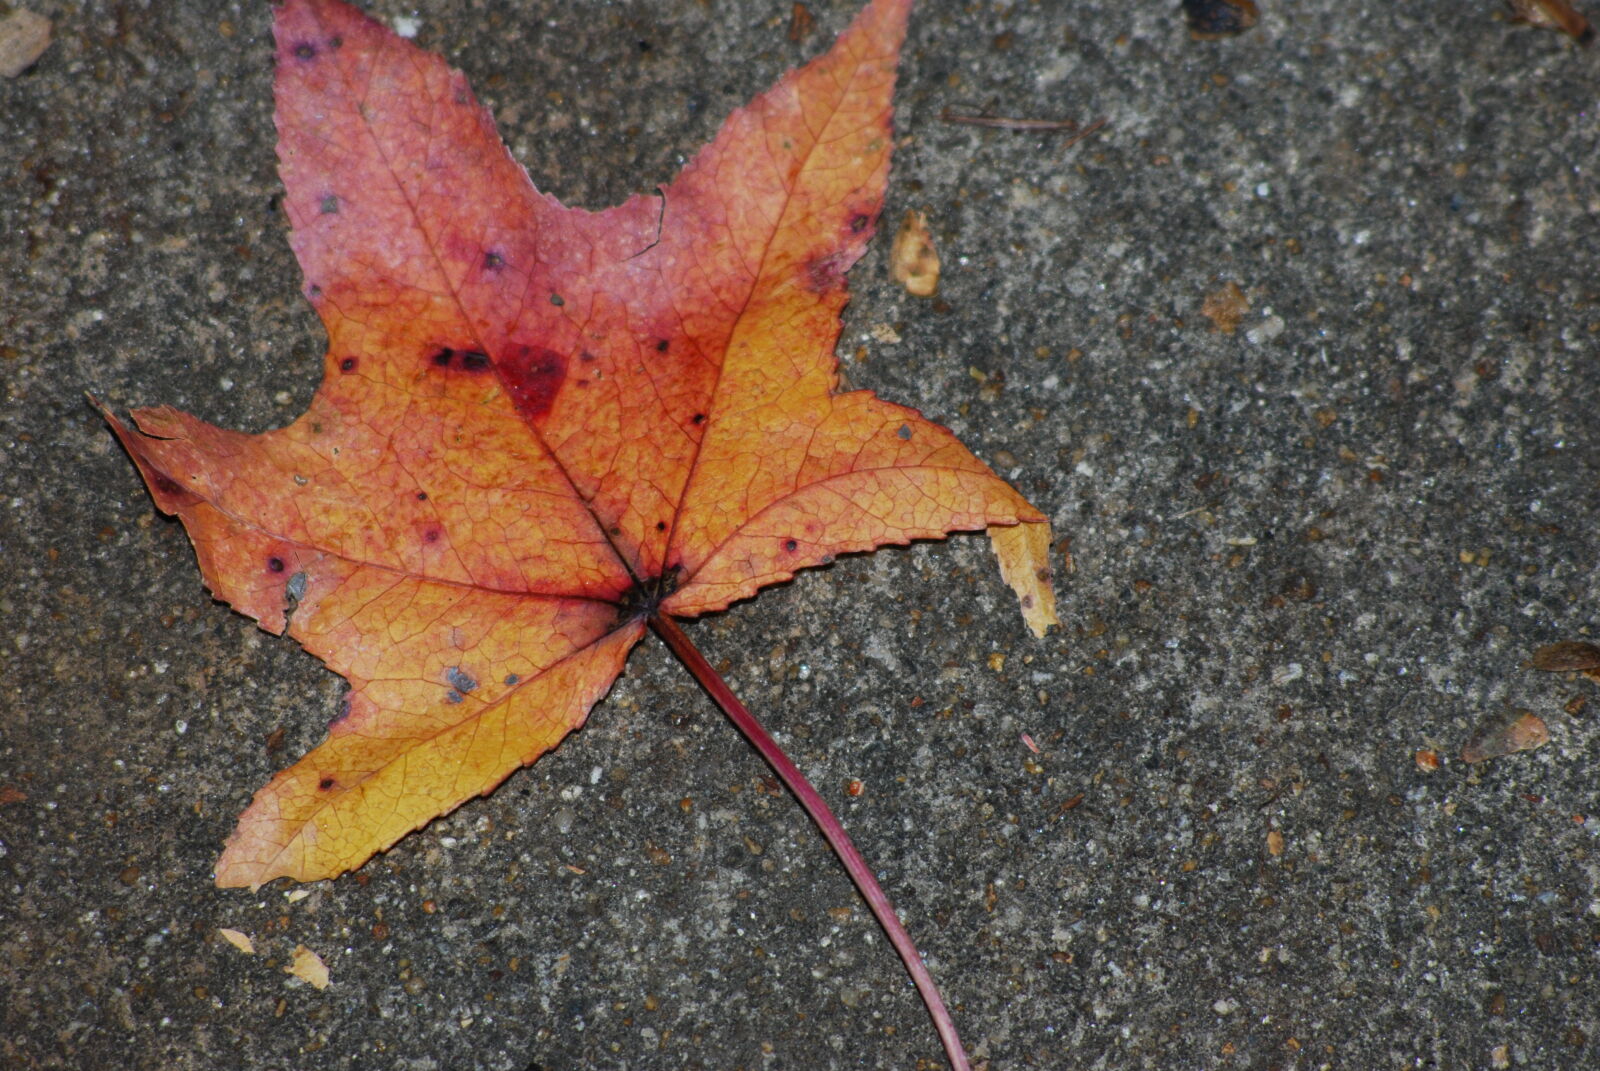 Nikon D80 + AF Nikkor 70-210mm f/4-5.6 sample photo. Autumn, leaf, fallen, leaves photography